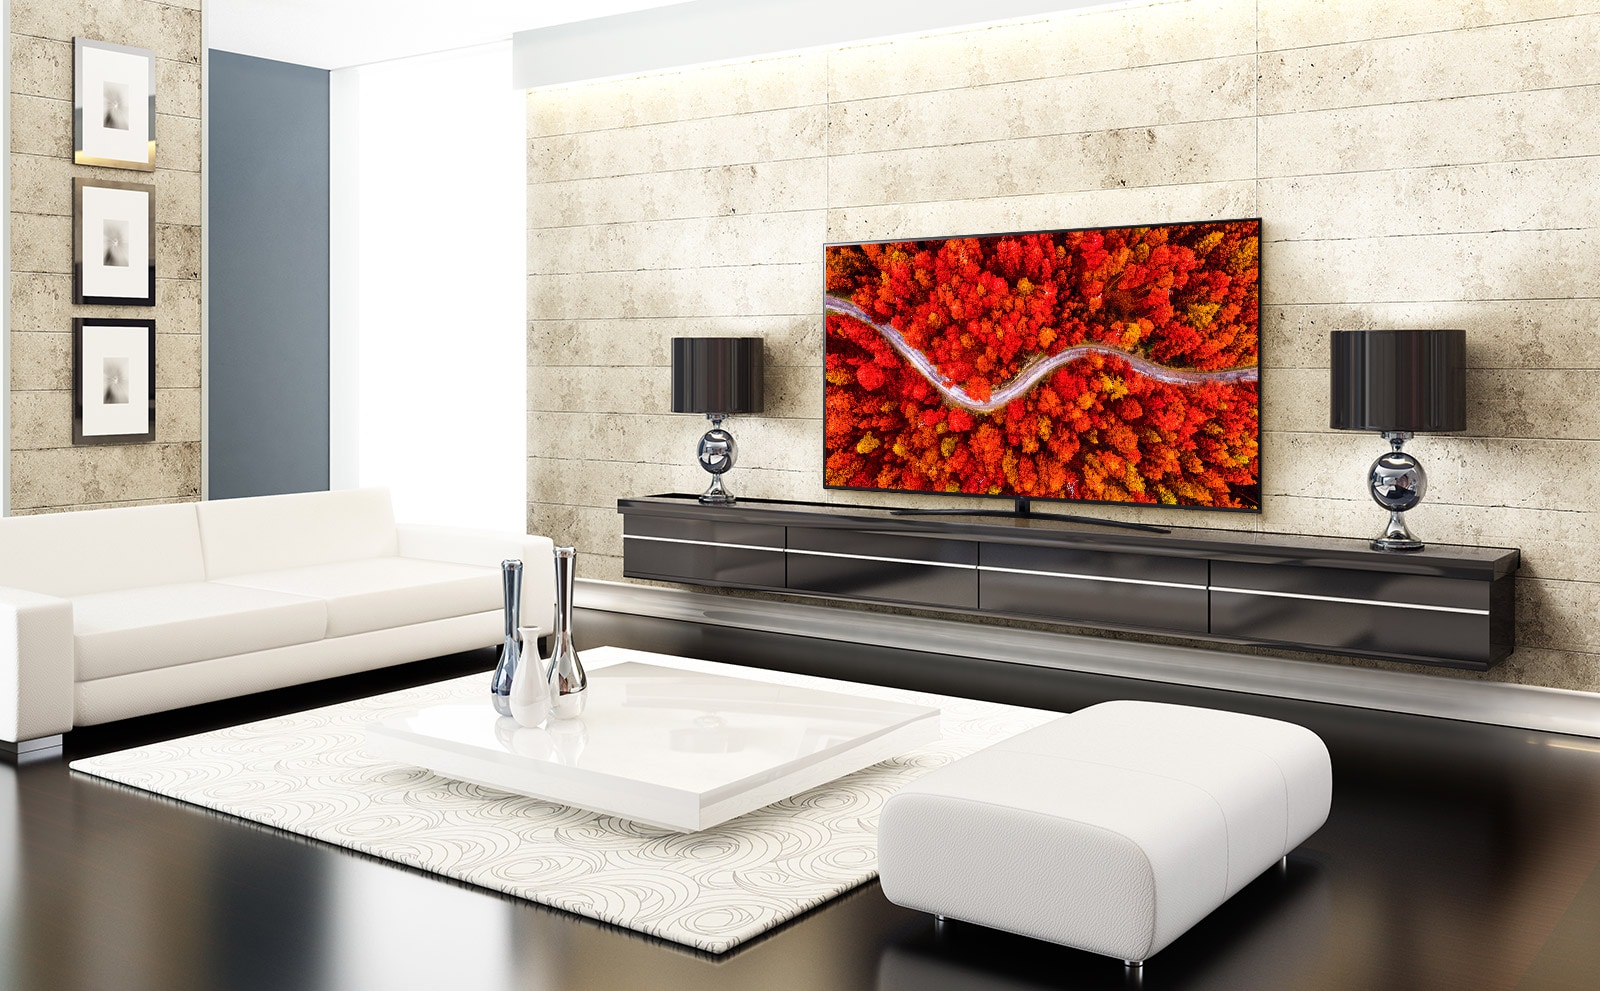 غرفة معيشة فاخرة مع تلفاز يعرض منظراً جوياً للغابات باللون الأحمر. 